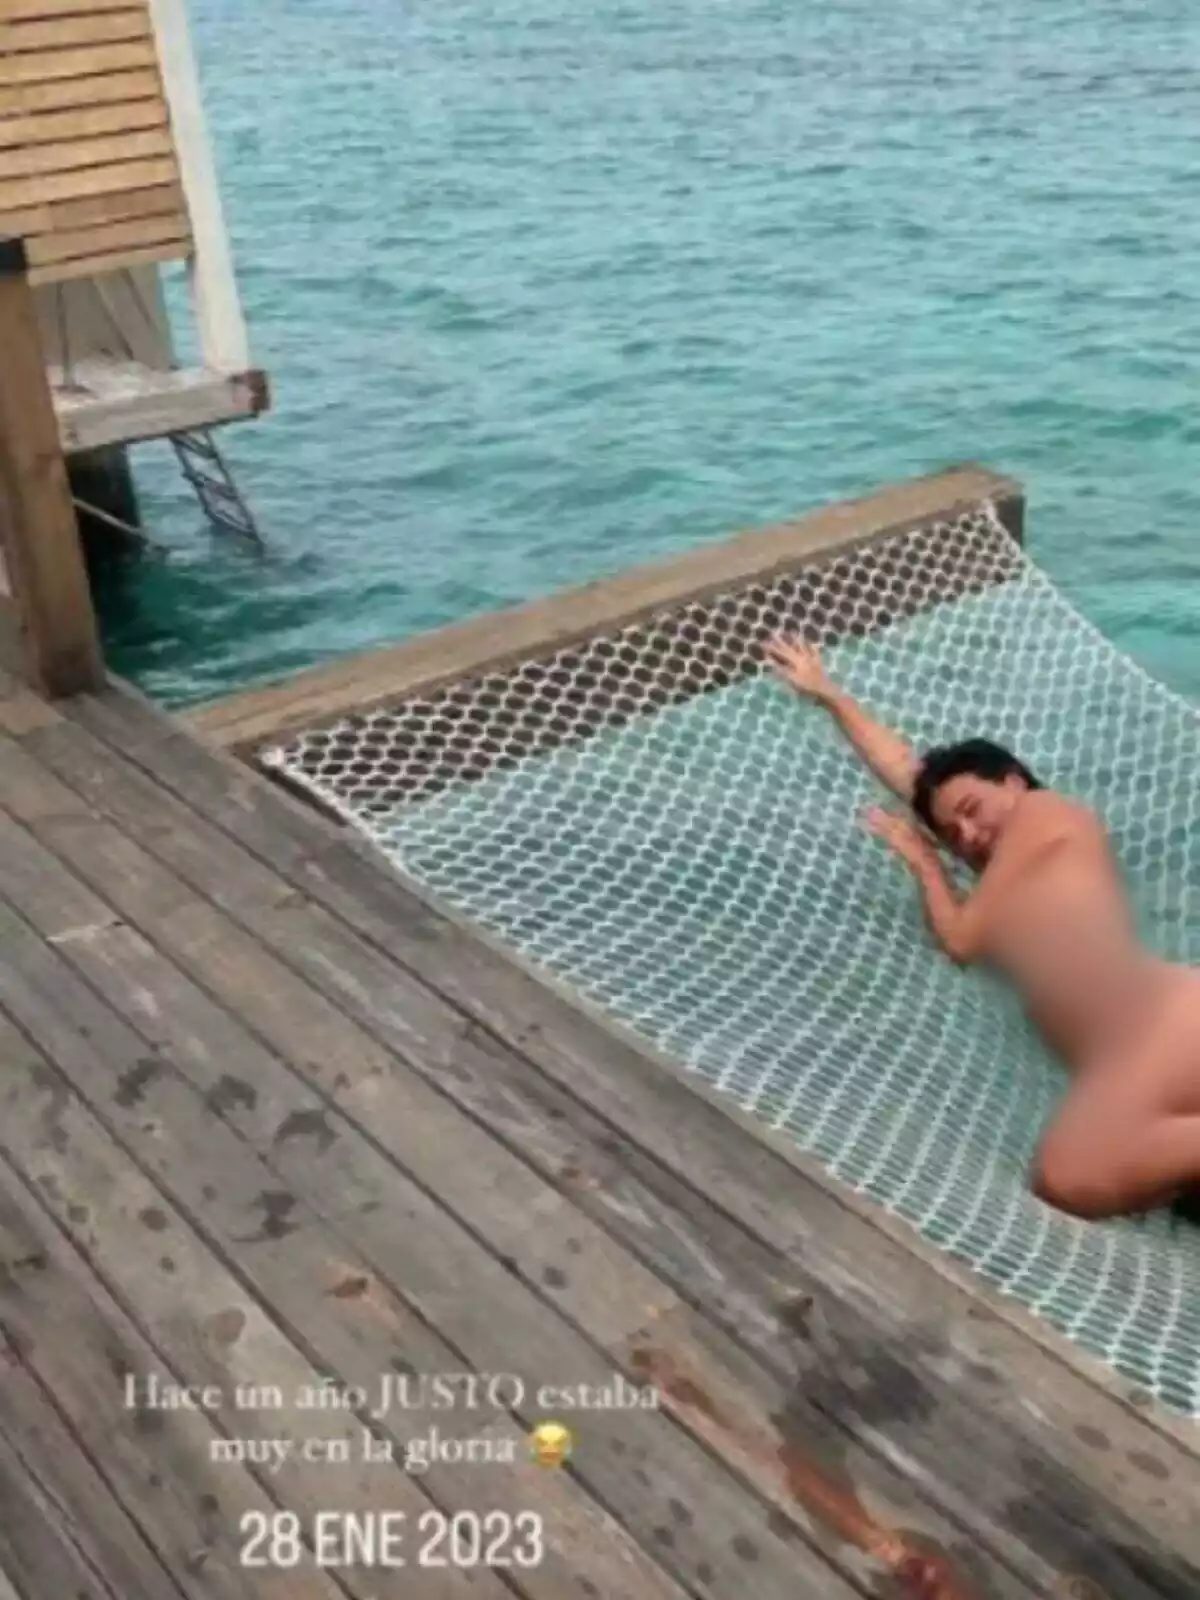 Storie de Laura Escanes en Instagram estirada en una hamaca encima del mar desnuda